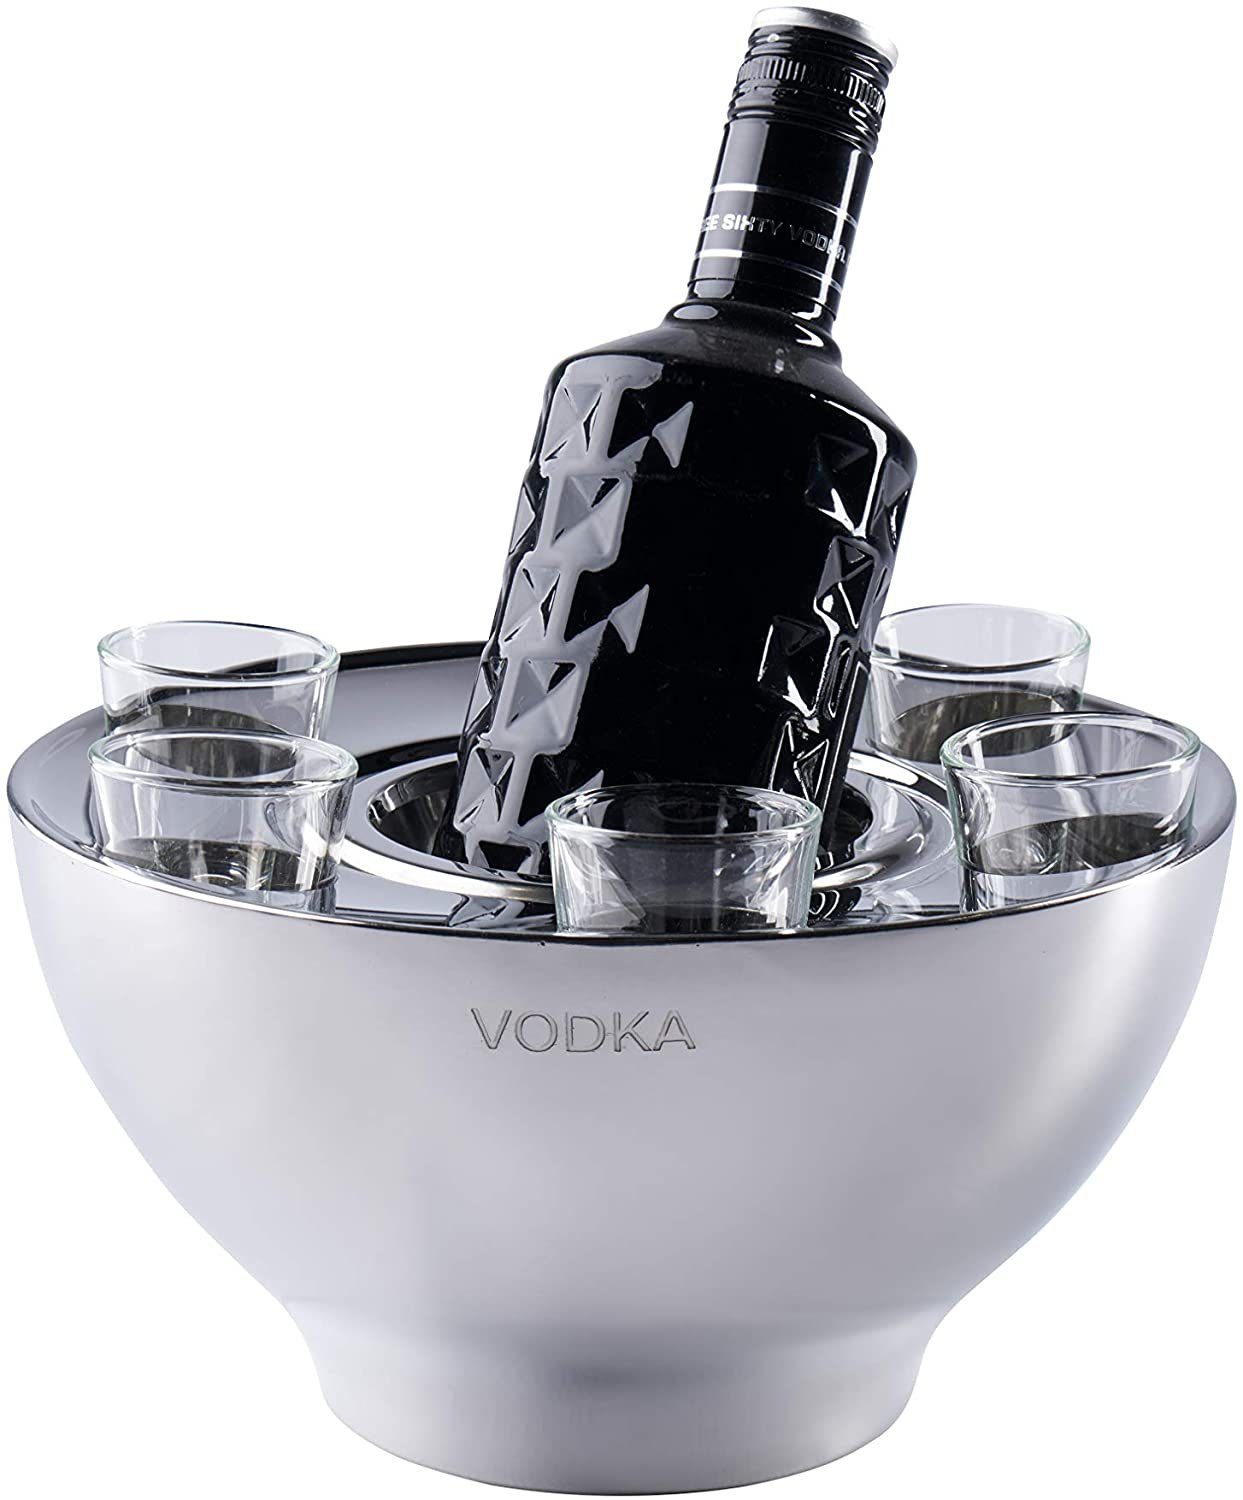 MichaelNoll Wein- und Sektkühler Wodkakühler Wodka Spirituosen Kühler "VODKA"  Edelstahl + 6 Shotgläsern Silber, Flaschenkühler Getränkekühler, Party  Geschenk 25x25x14 cm